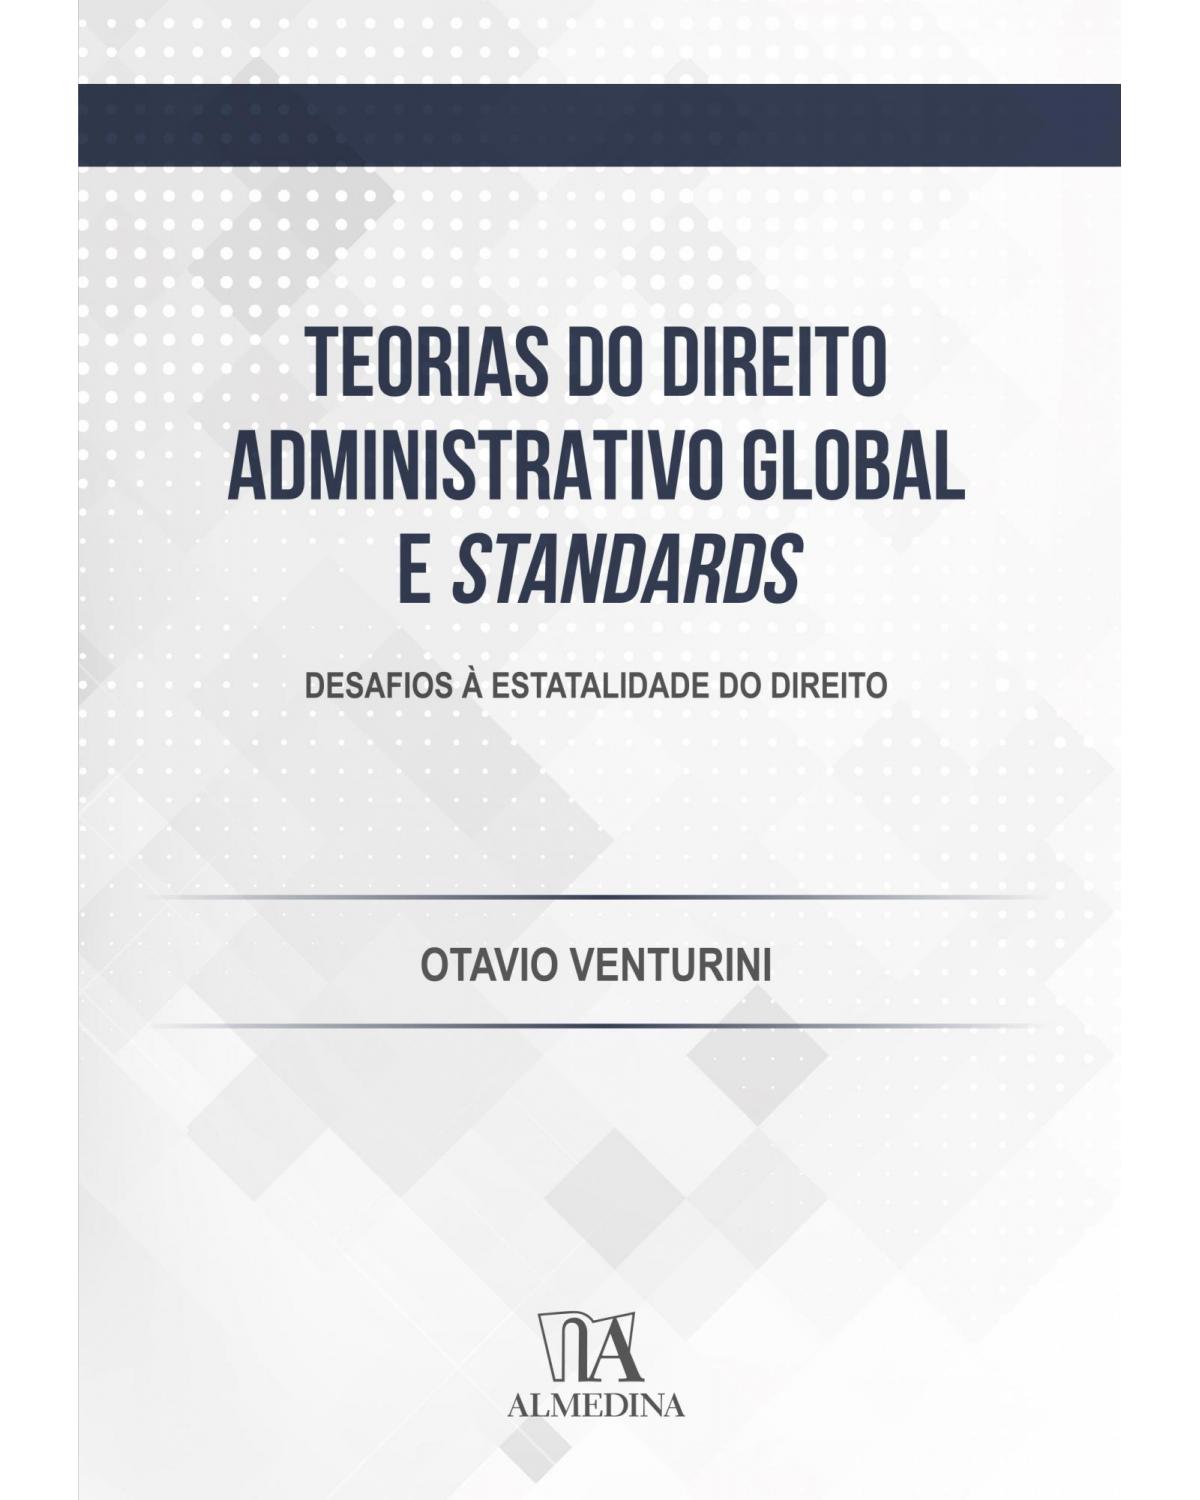 Teorias do direito administrativo global e standards - desafios à estatalidade do direito - 1ª Edição | 2020